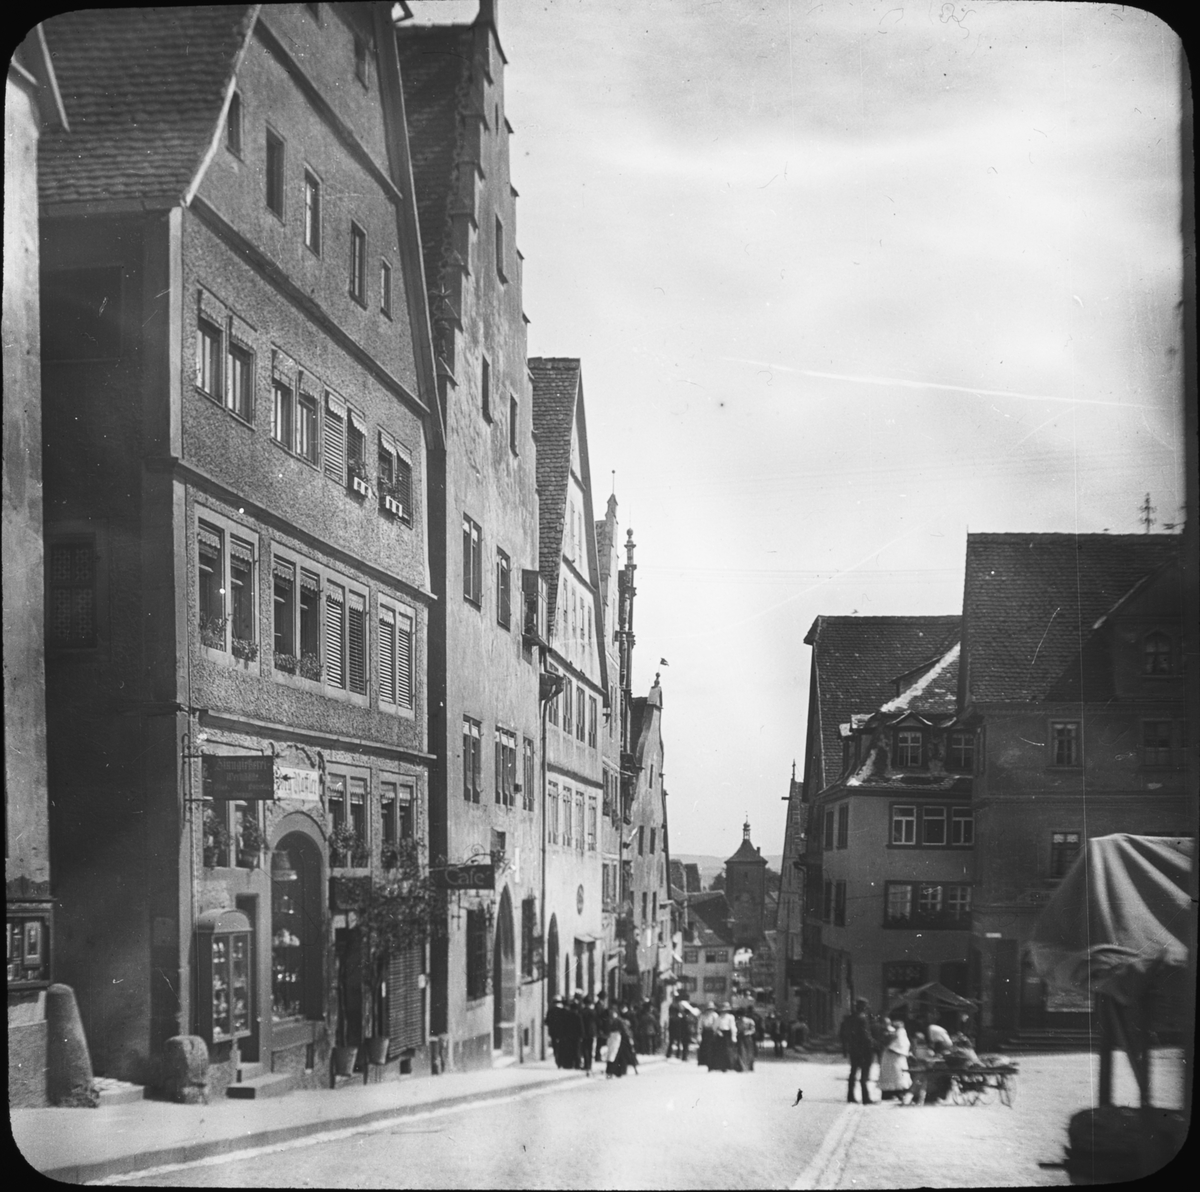 Skioptikonbild med motiv från Rothenburg ob der Tauber.
Bilden har förvarats i kartong märkt: Vårresan 1910. Rothenburg XXIX.. Text på bild: "Markt".